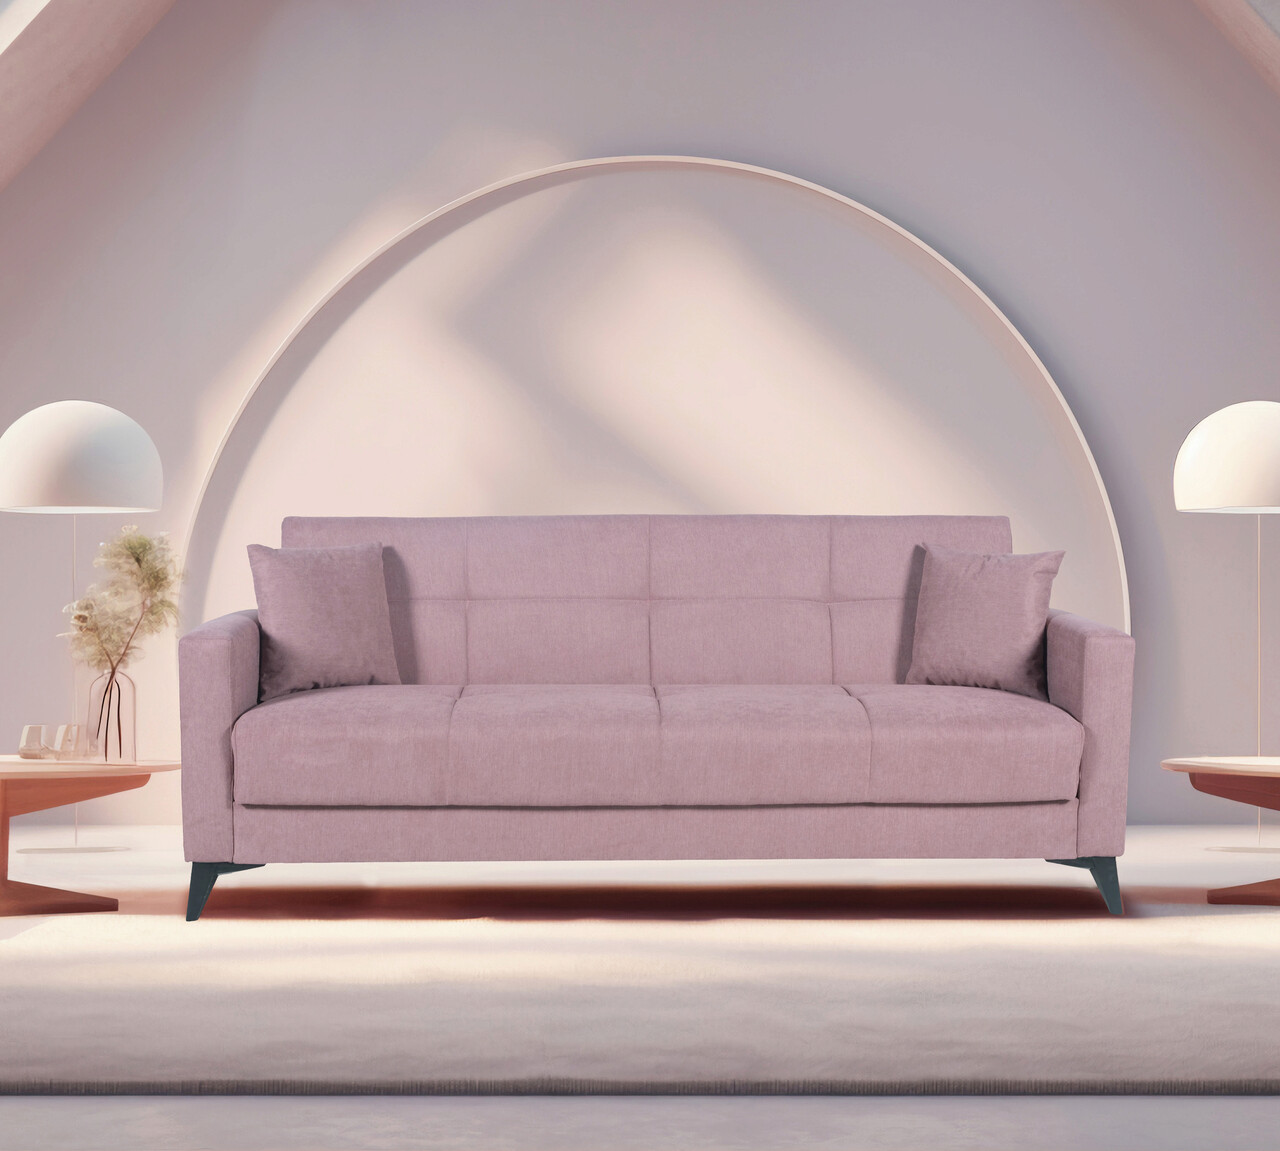 Bedora fabio kihúzható kanapé, 3 személyes, 215x82x92 cm, lila